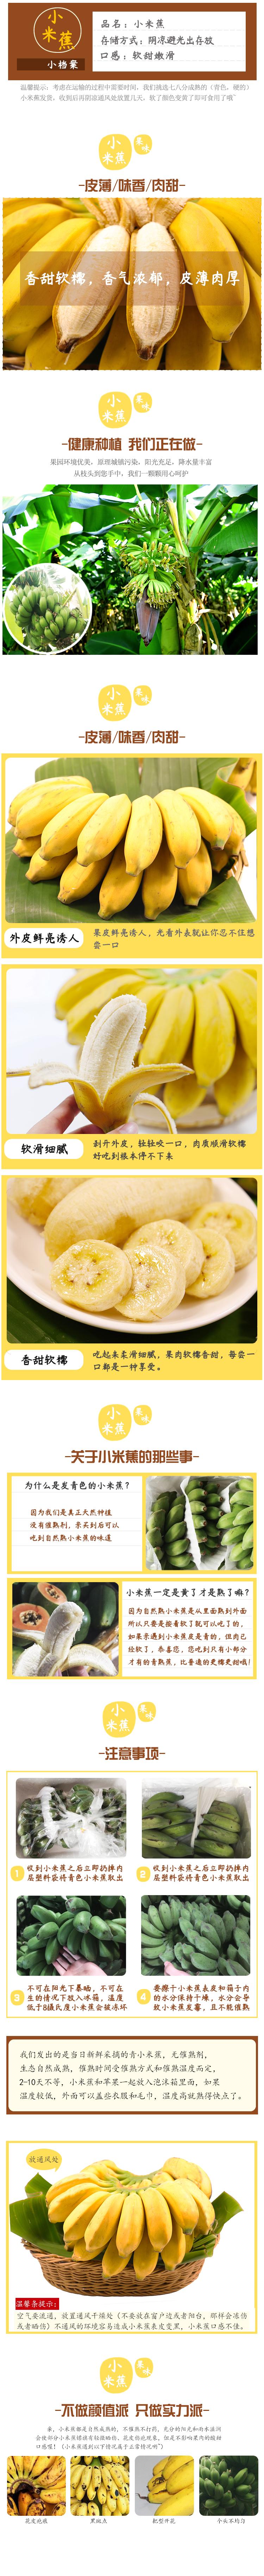 详情页香蕉-小米蕉.jpg